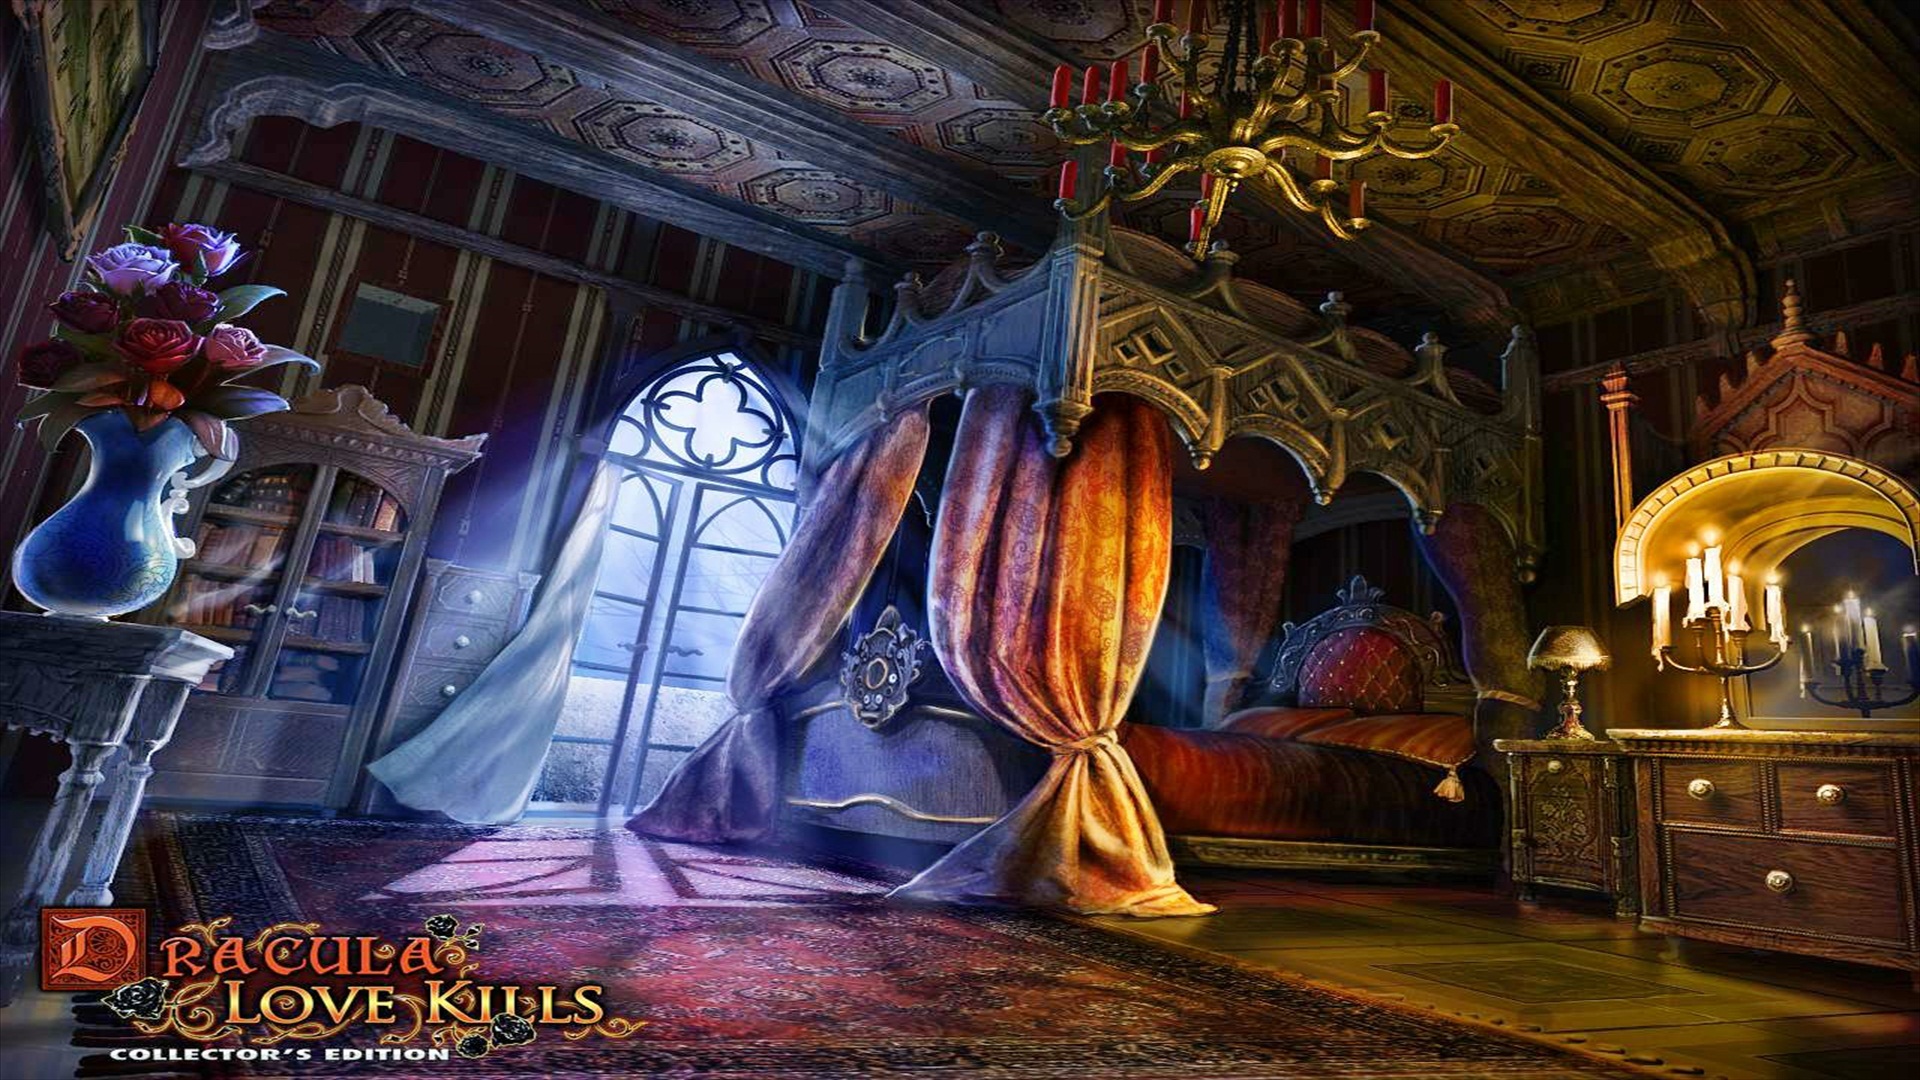 Dracula: Love Kills, a captivating video game desktop wallpaper.